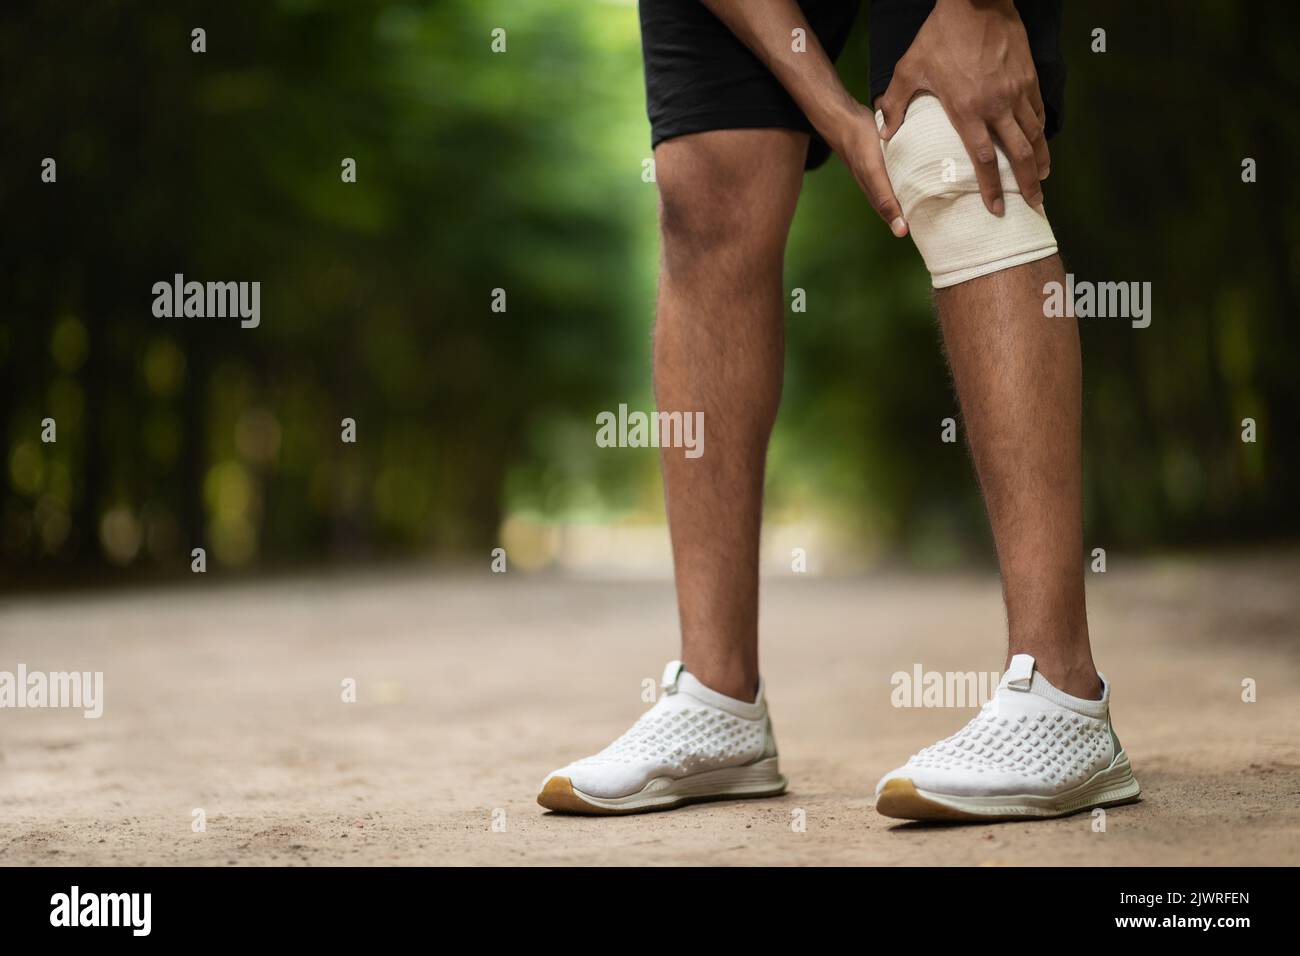 Un sportif méconnaissable enroule le genou blessé avec un bandage élastique Banque D'Images